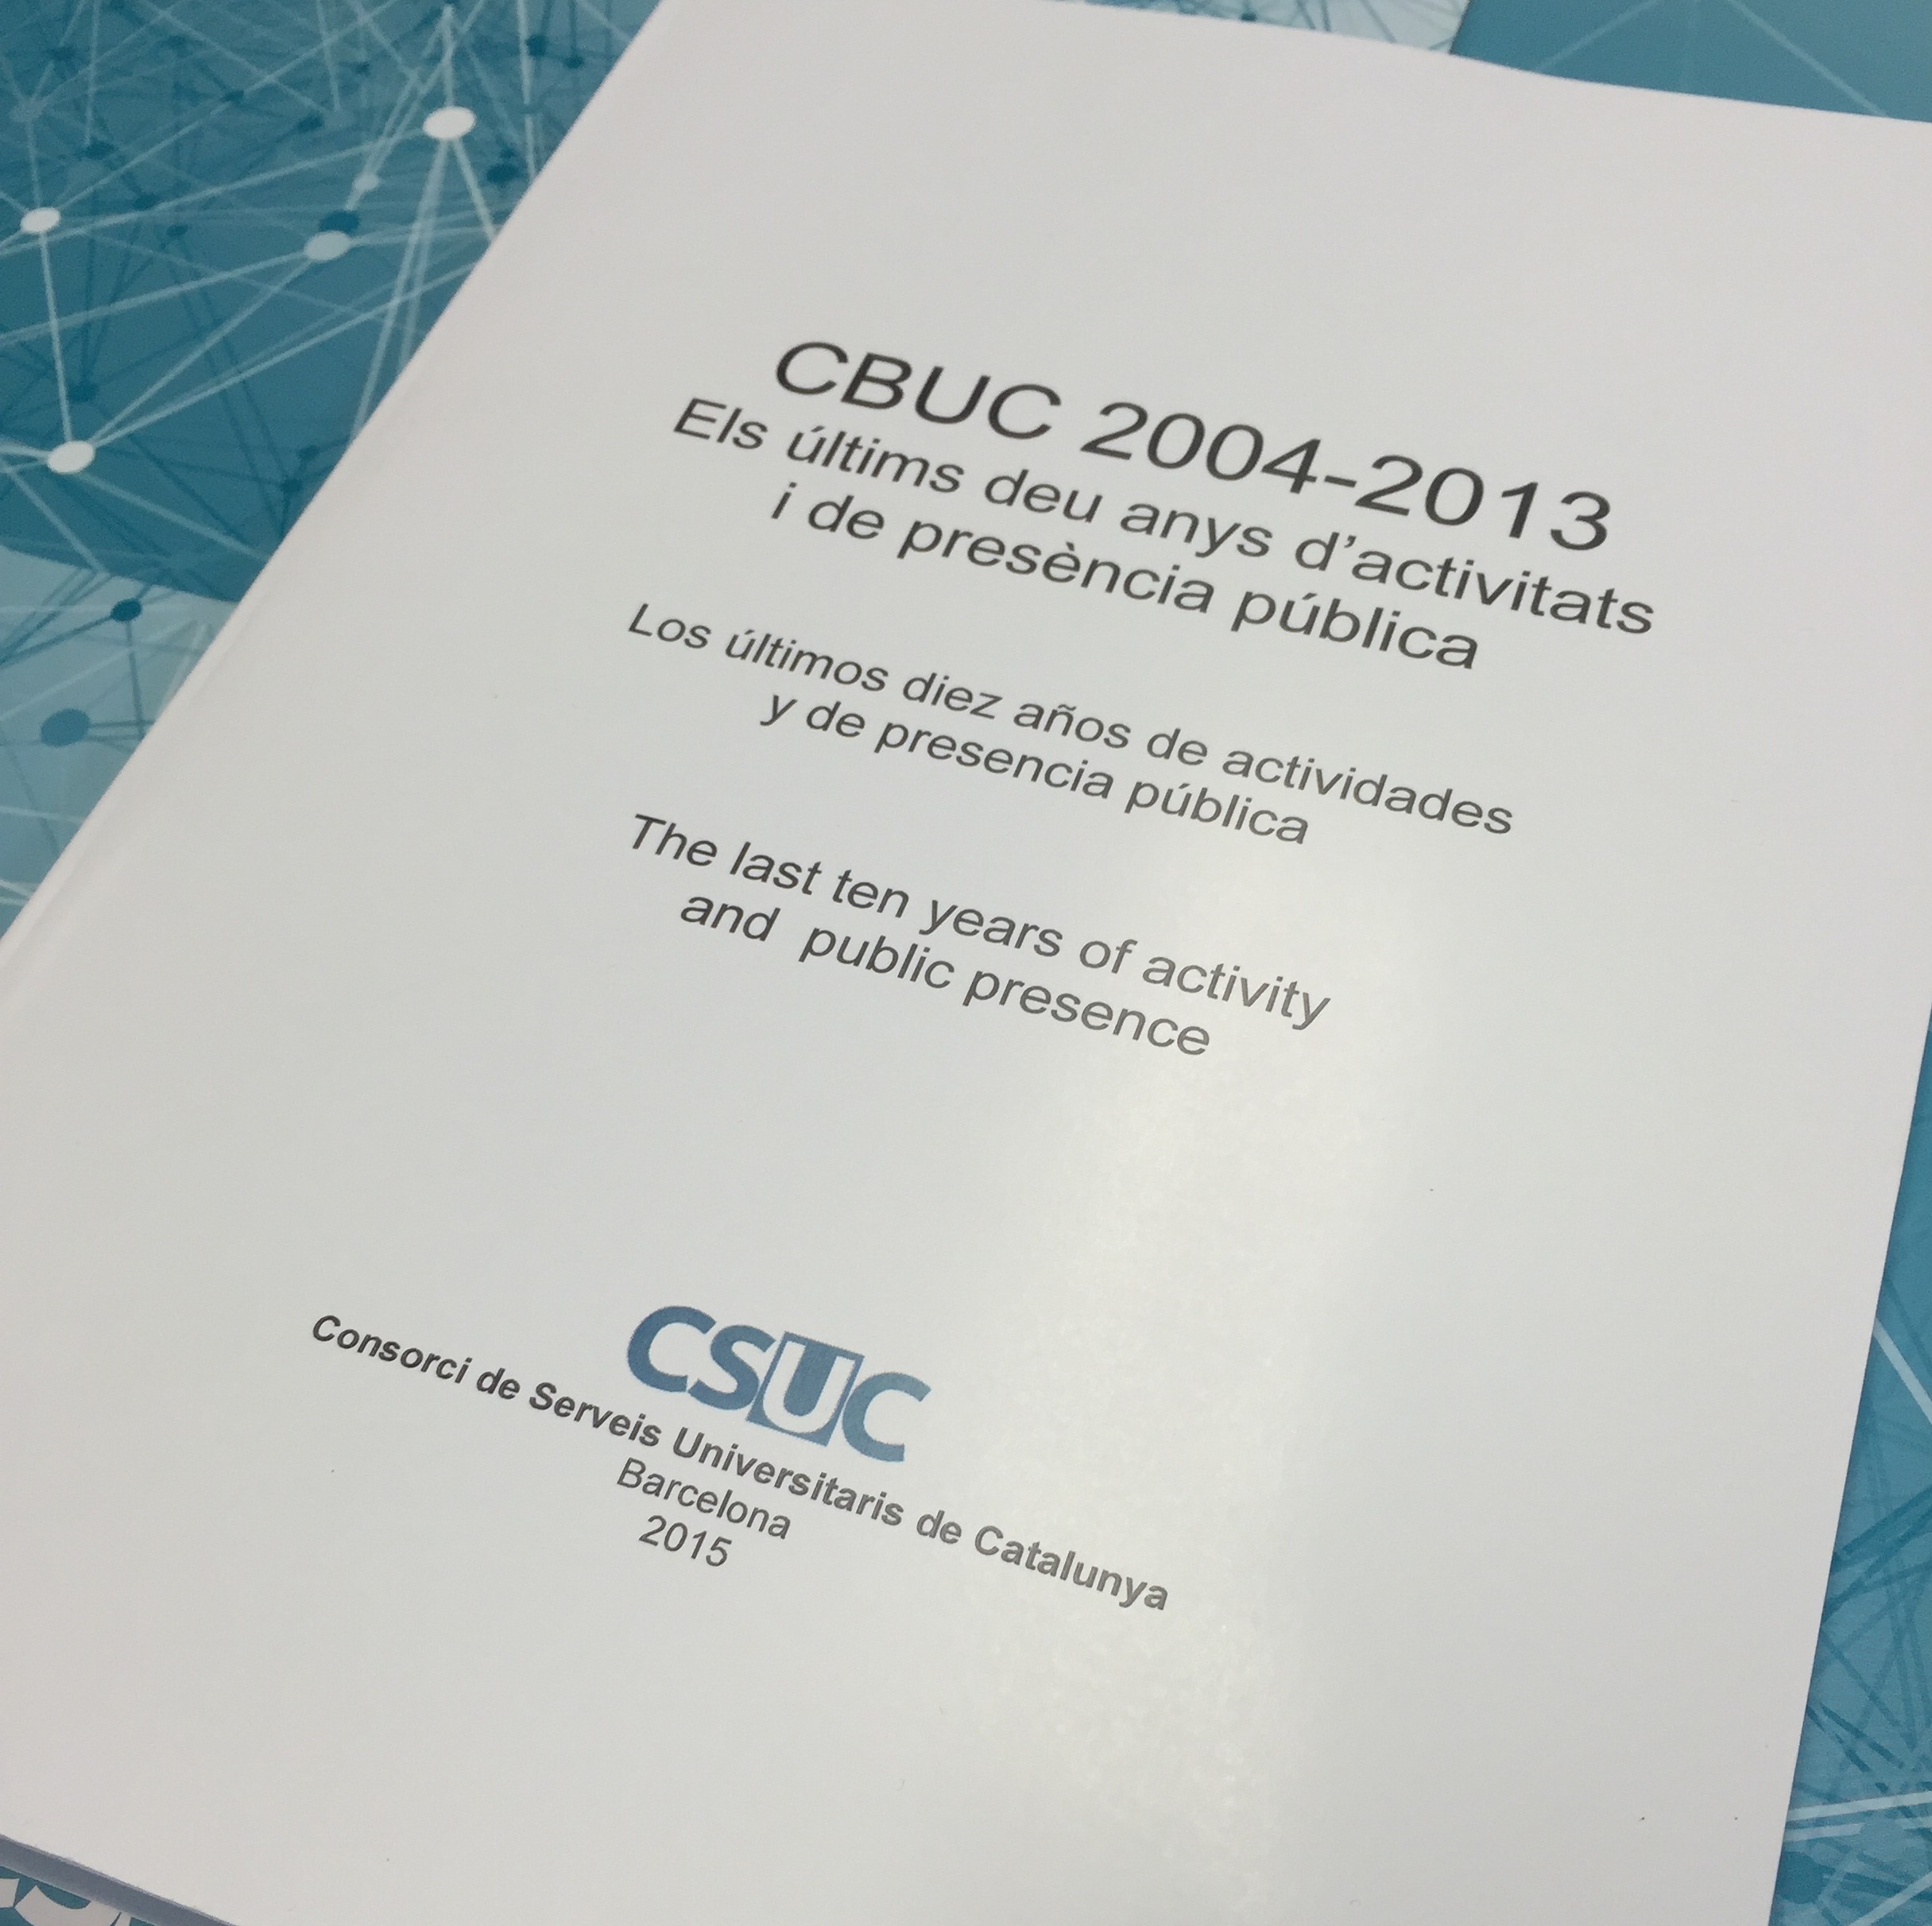 Publicat el llibre: “CBUC 2004-2013: els últims deu anys d’activitats i de presència pública”